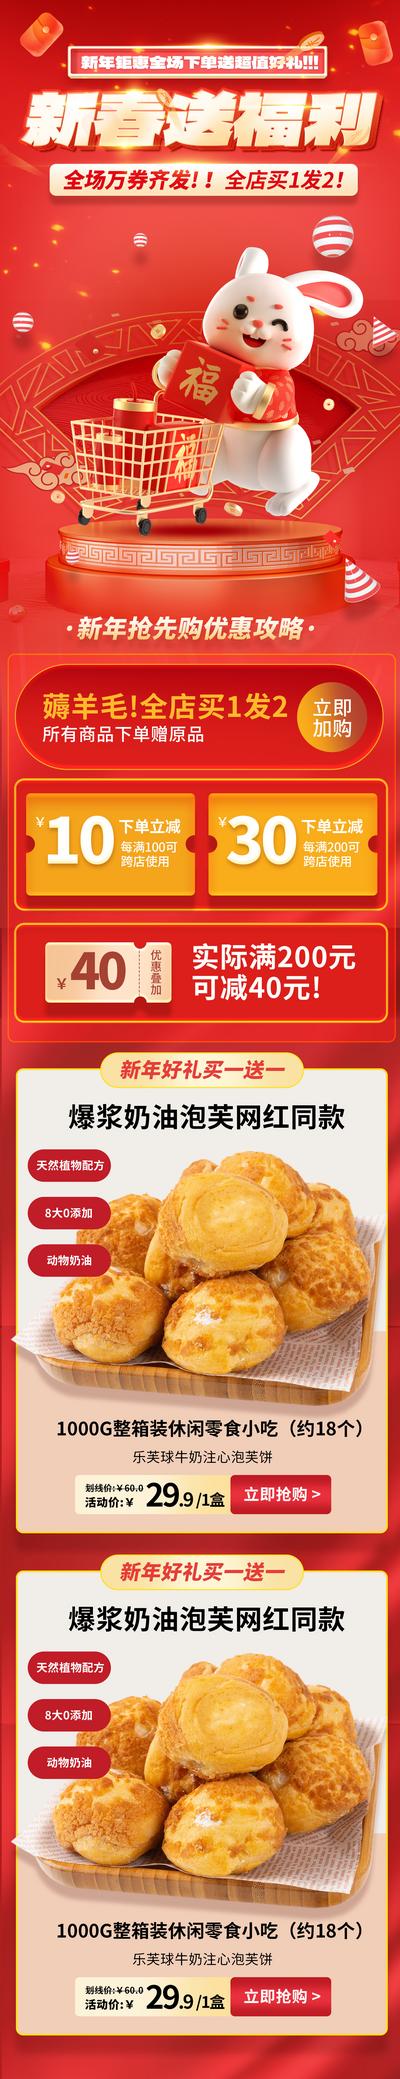 南门网 海报 长图 中国传统节日 新春 新年 促销 福利 活动 红金